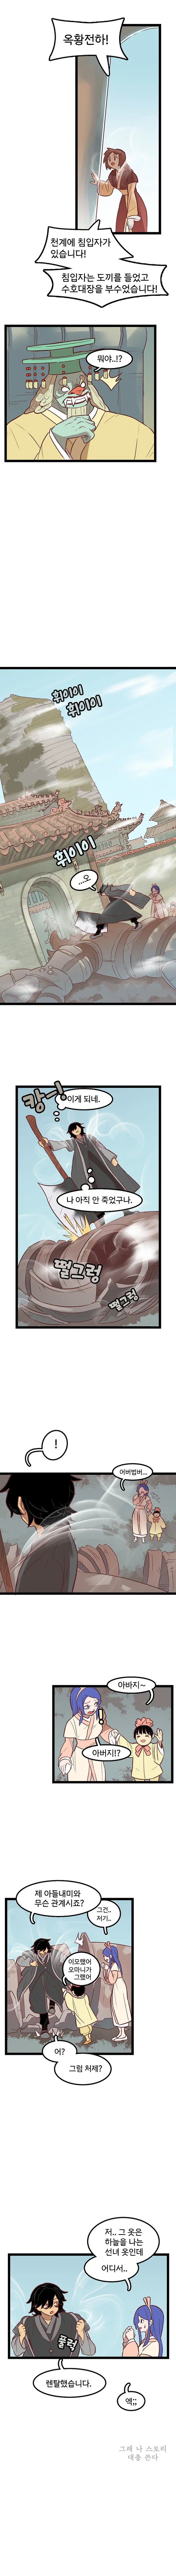 천도 복숭아 먹는 만화 | mbong.kr 엠봉